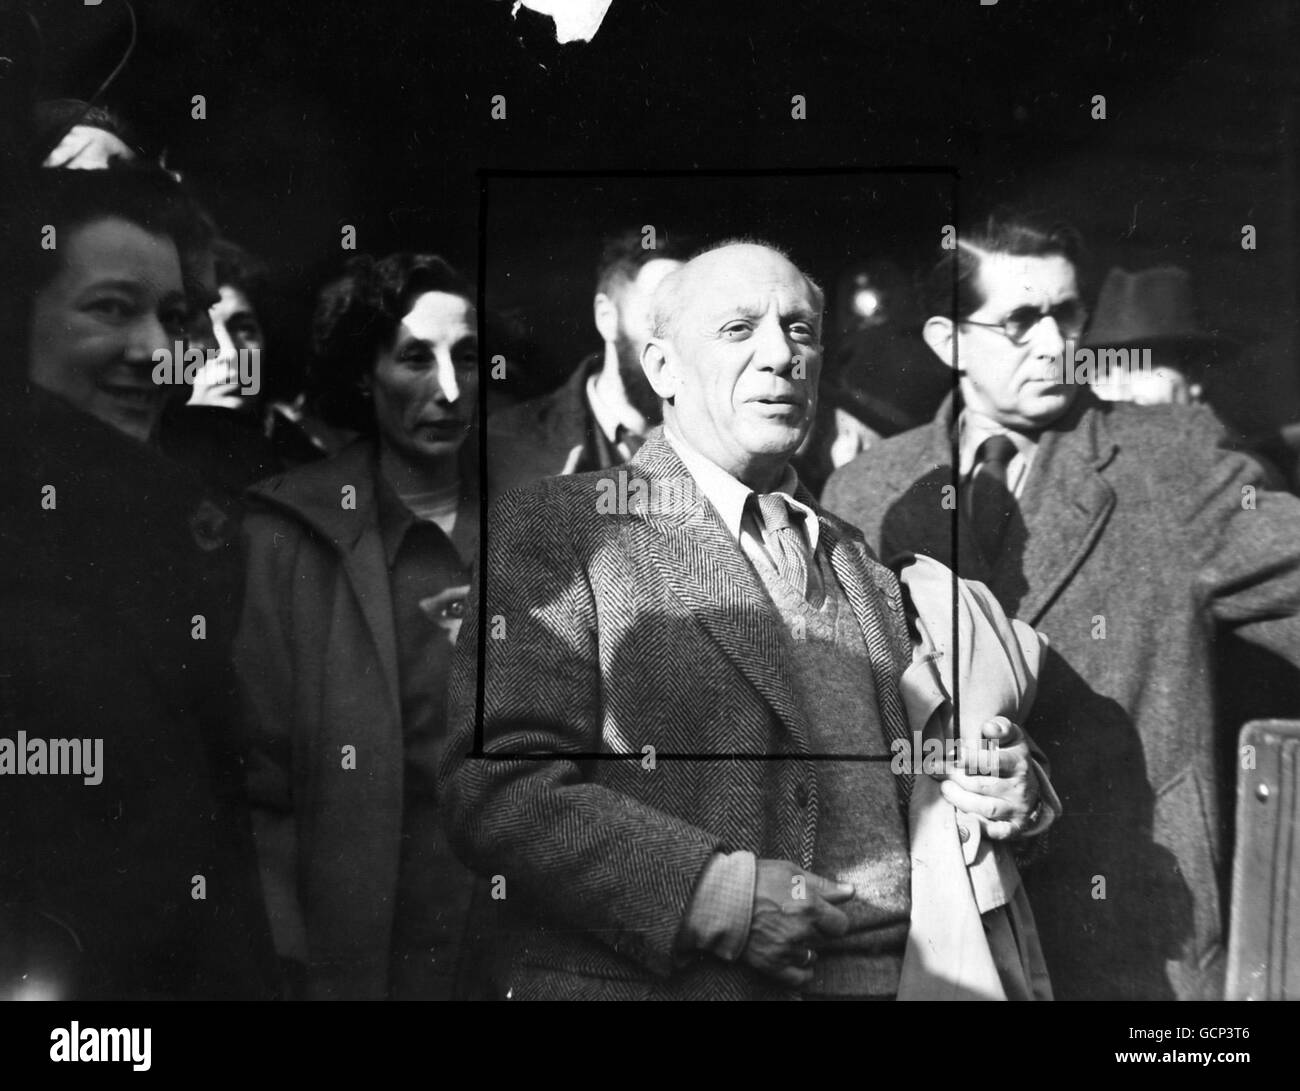 Pablo Picasso, l'artiste espagnol et pionnier de l'école Picasso, arrive à la gare Victoria, Londres, le 11 novembre 1950 de Paris en route vers Sheffield et le deuxième mot Congrès de la paix Banque D'Images